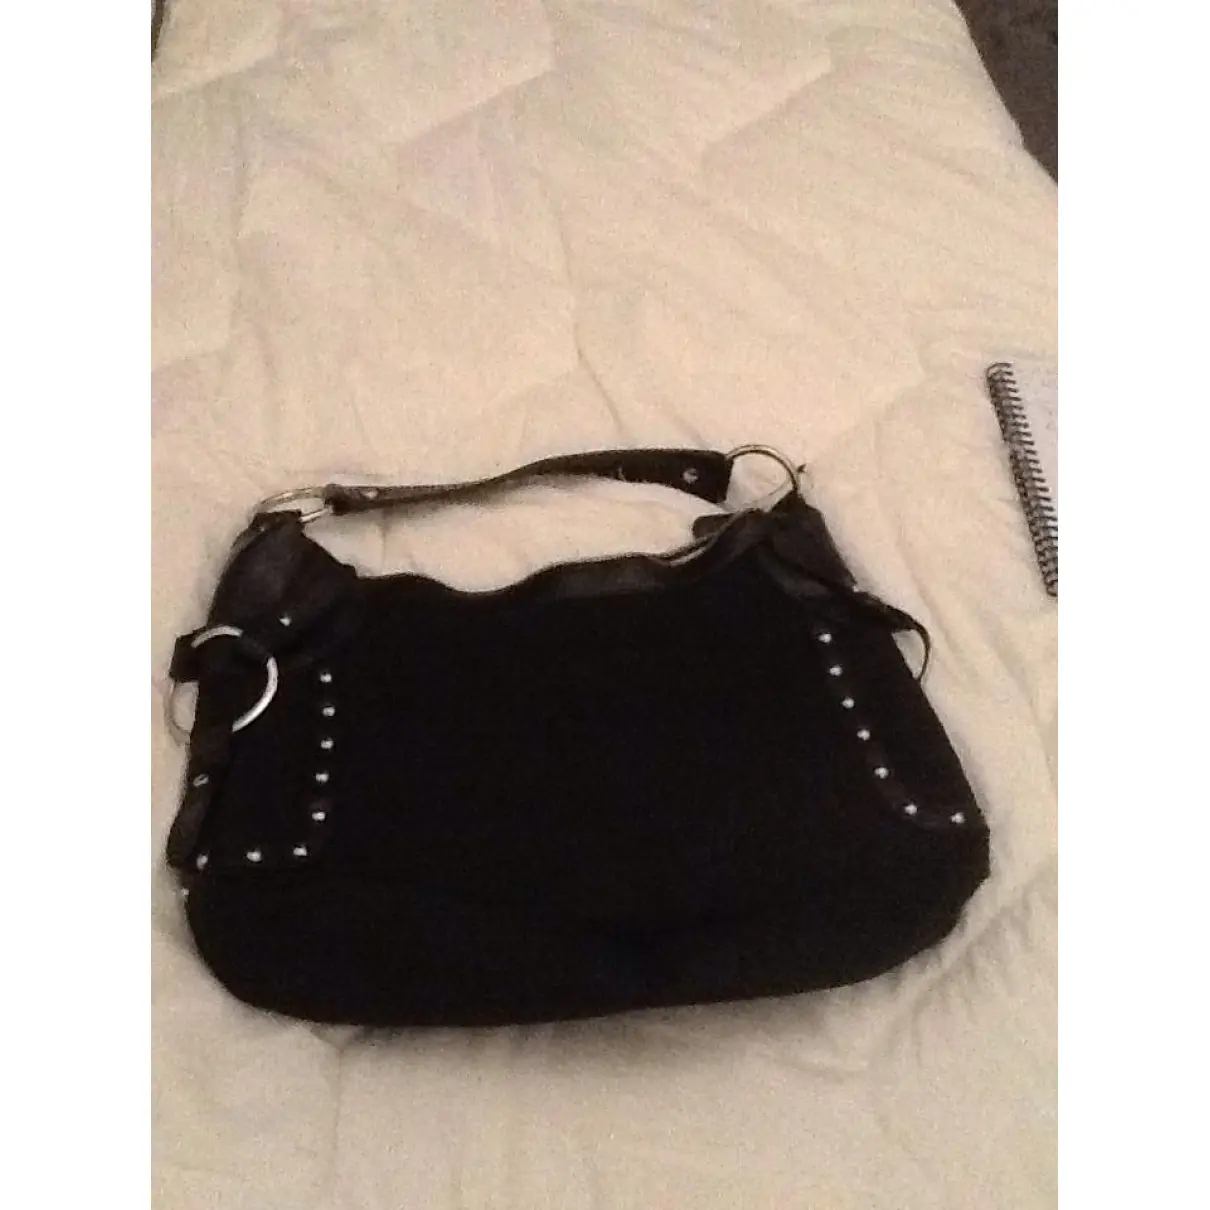 Buy Dkny Black Handbag online